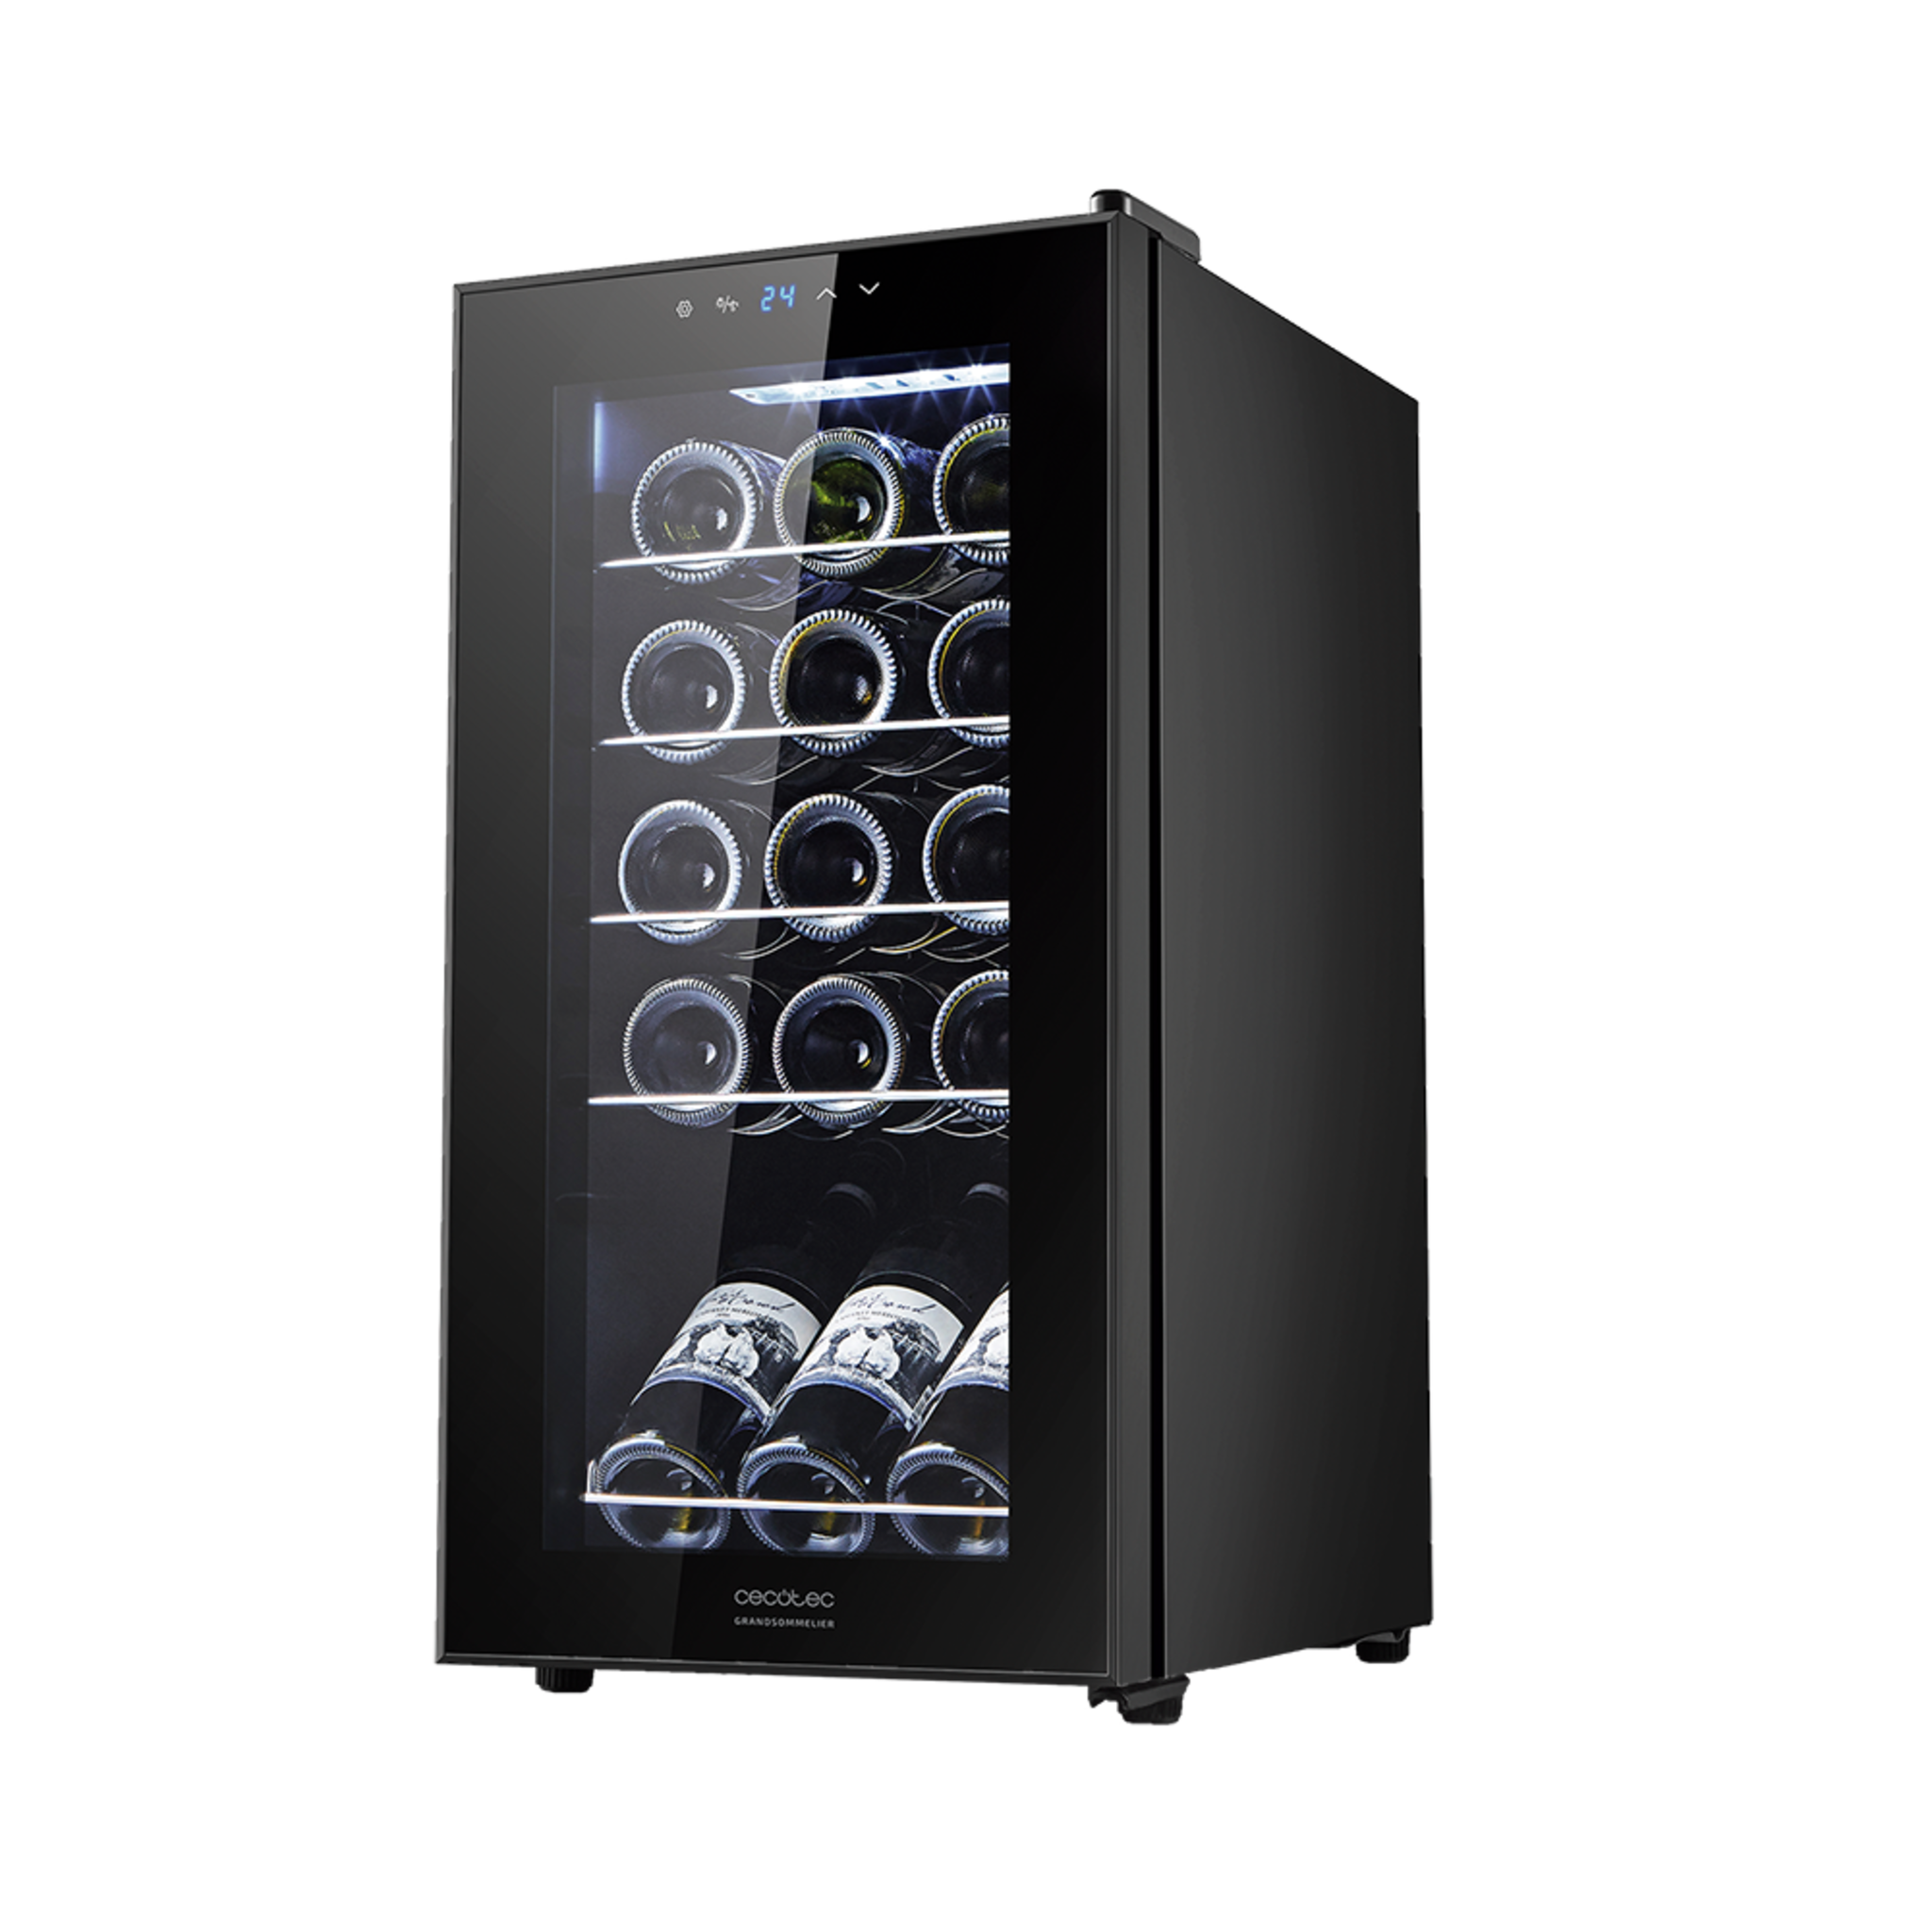 GrandSommelier 15000 Black Compressor Weinkühlschrank 15 Flaschen, Kompressor, garantierte hohe Leistung, einstellbare Temperatur und LED-Innenbeleuchtung.